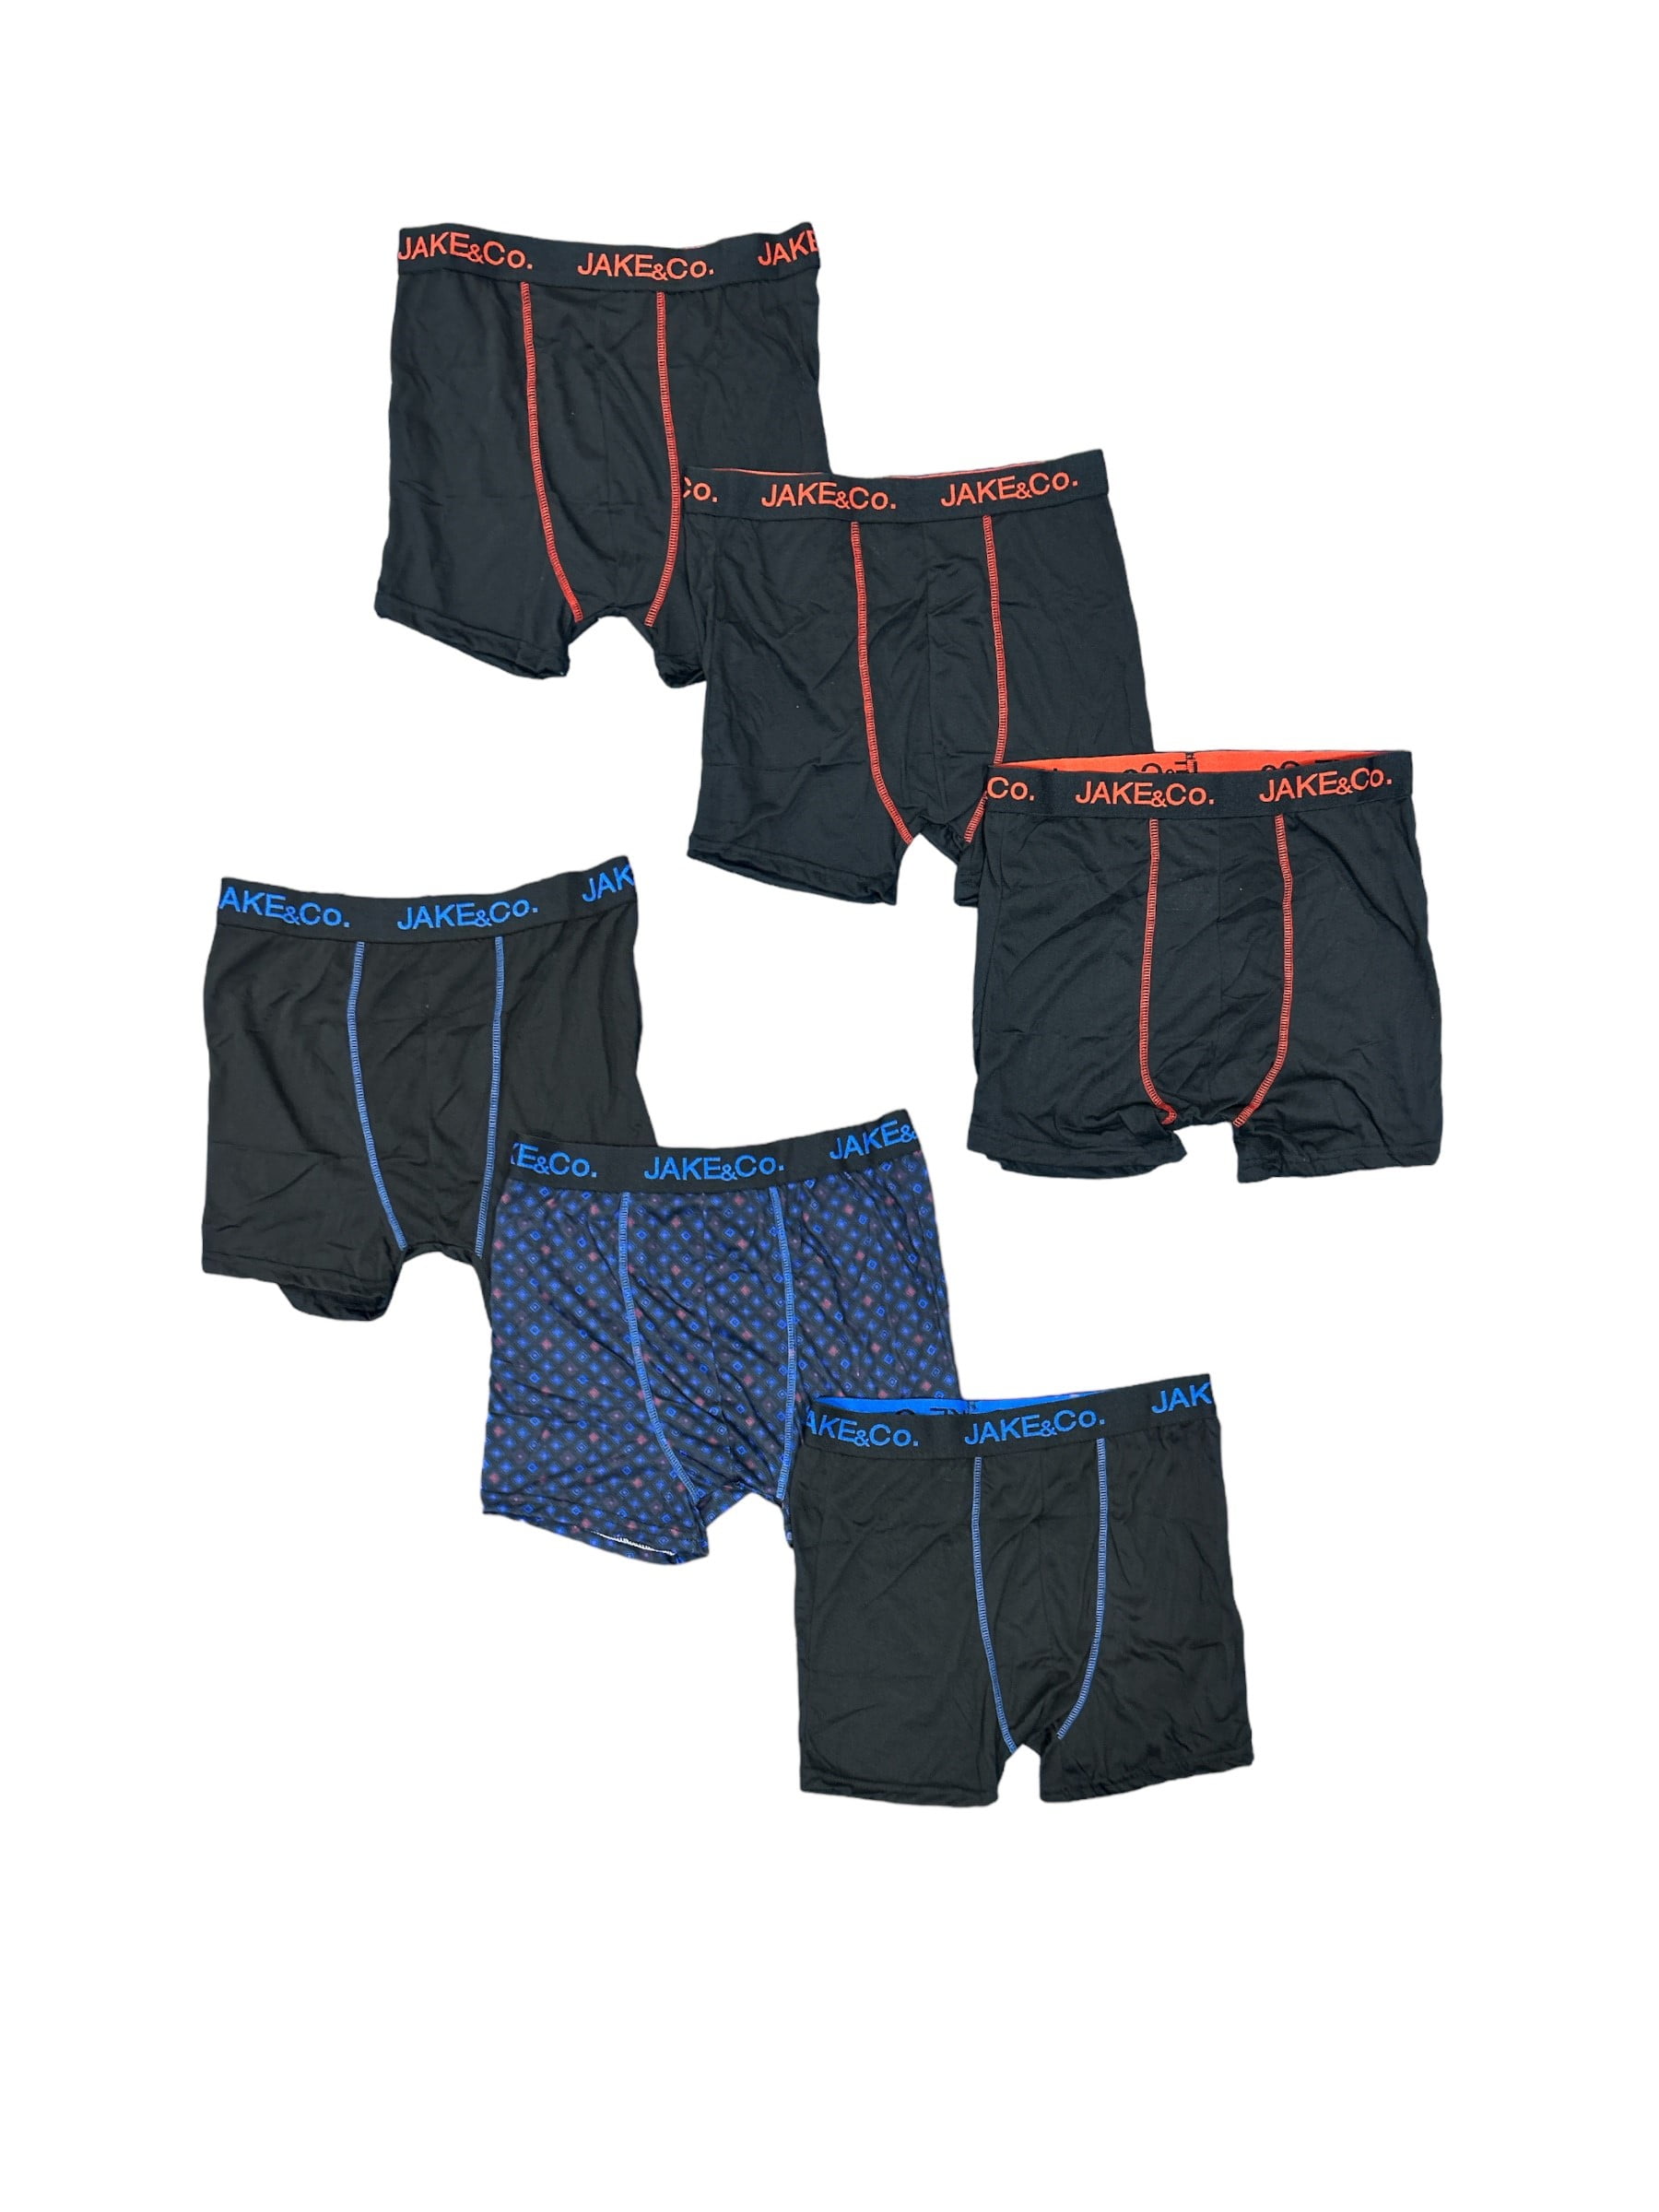 AND1 Men's Underwear Pro Platinum Long Leg Boxer Briefs, 9